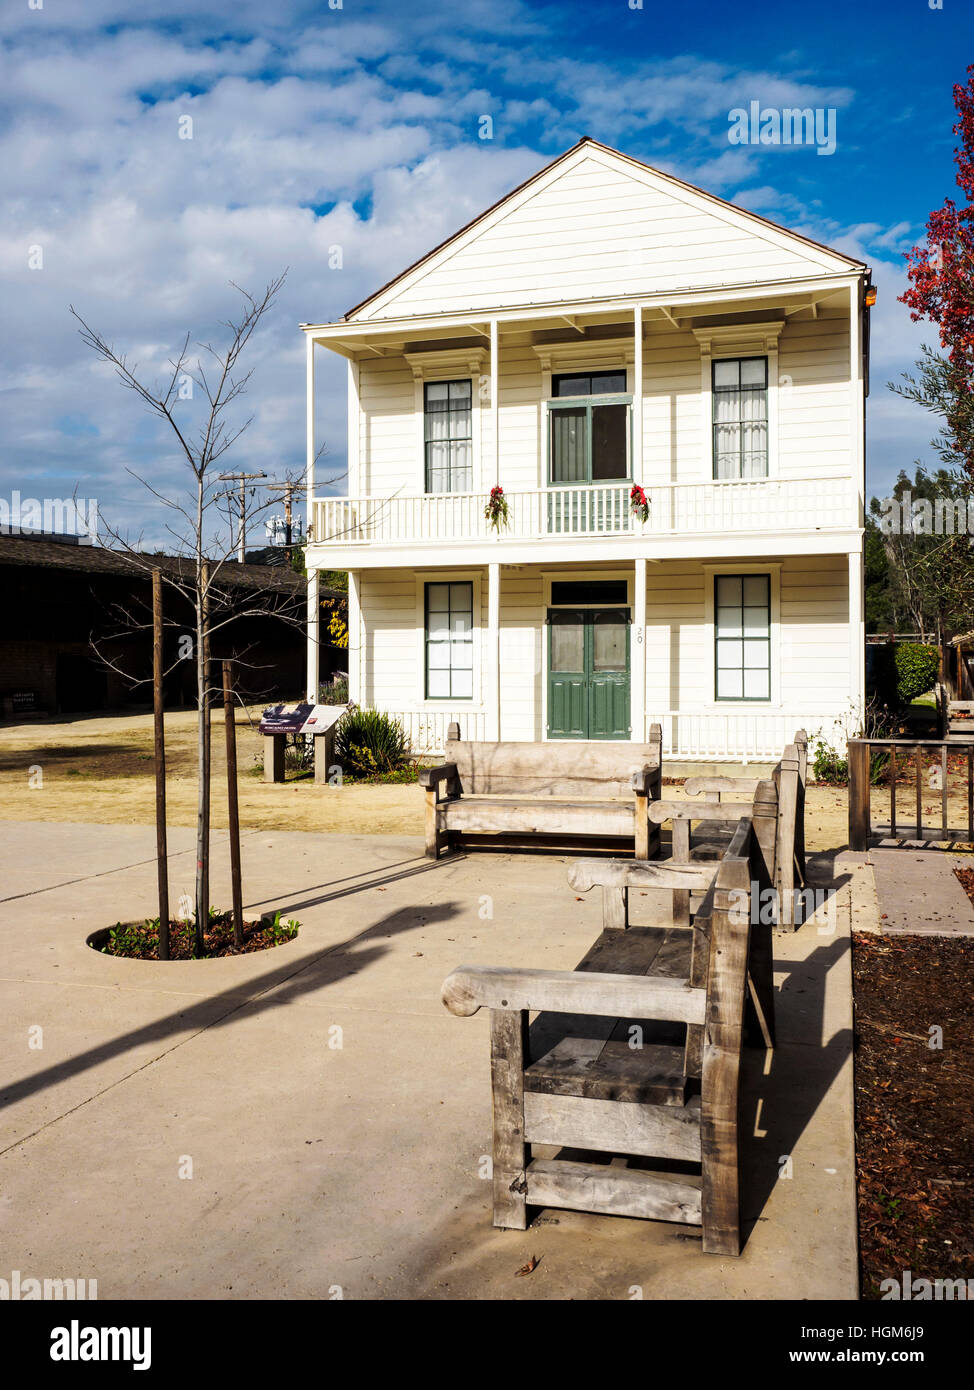 Historique Le bâtiment de l'hôtel Toscano Parc historique d'état de Sonoma, Sonoma, Californie date du milieu du xixe siècle. Banque D'Images